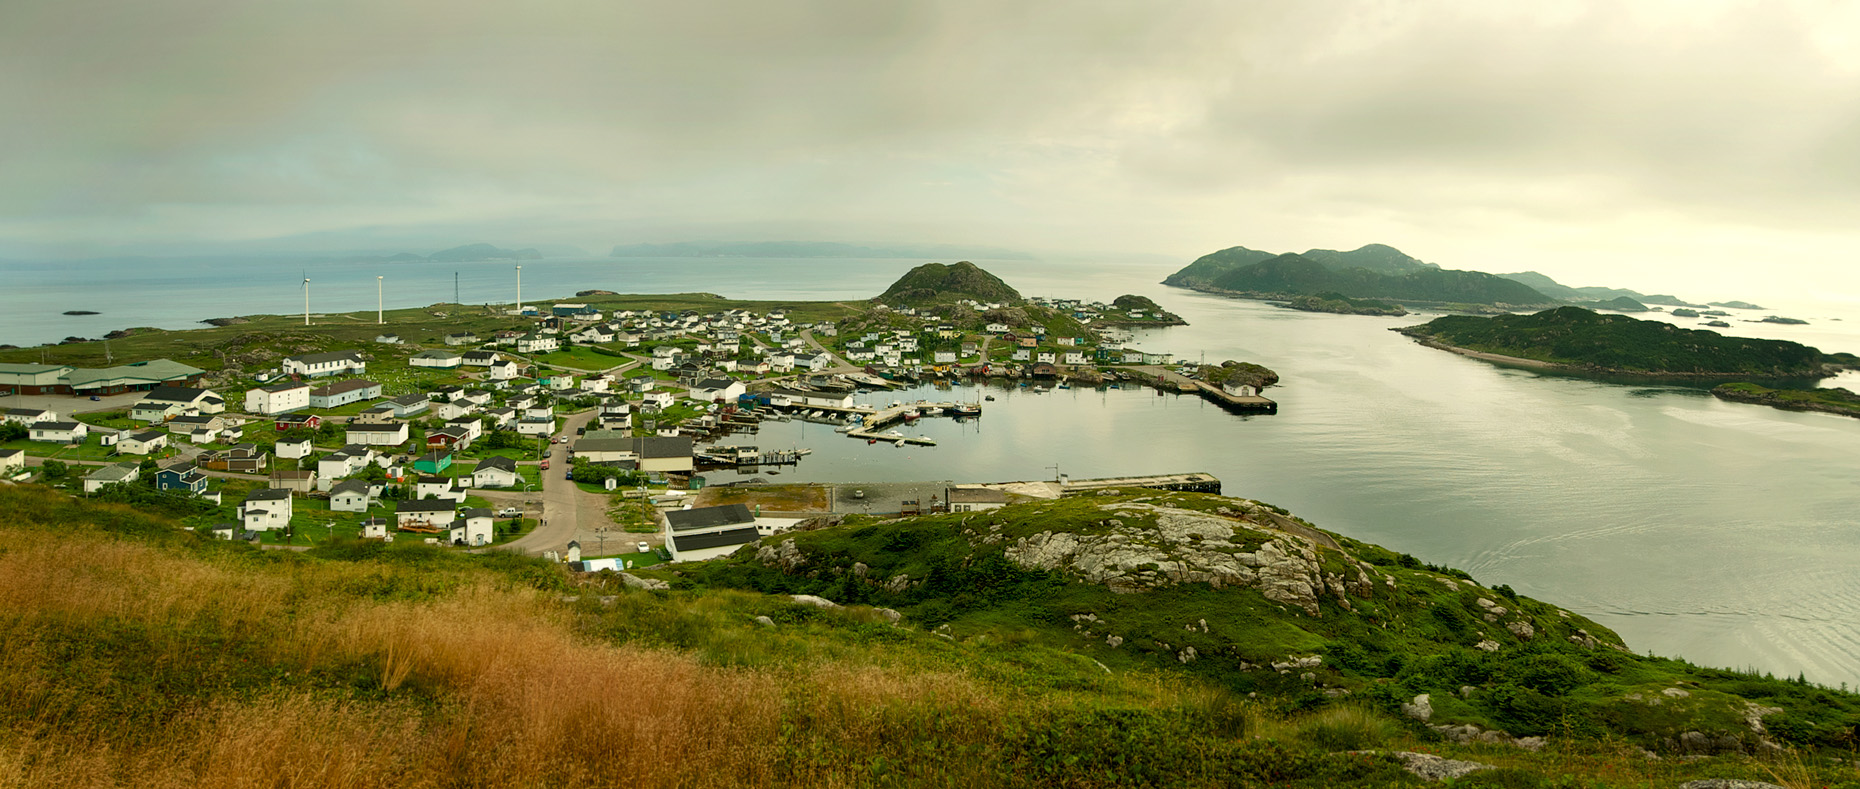 Pano image of Ramea Island, Newfoundland